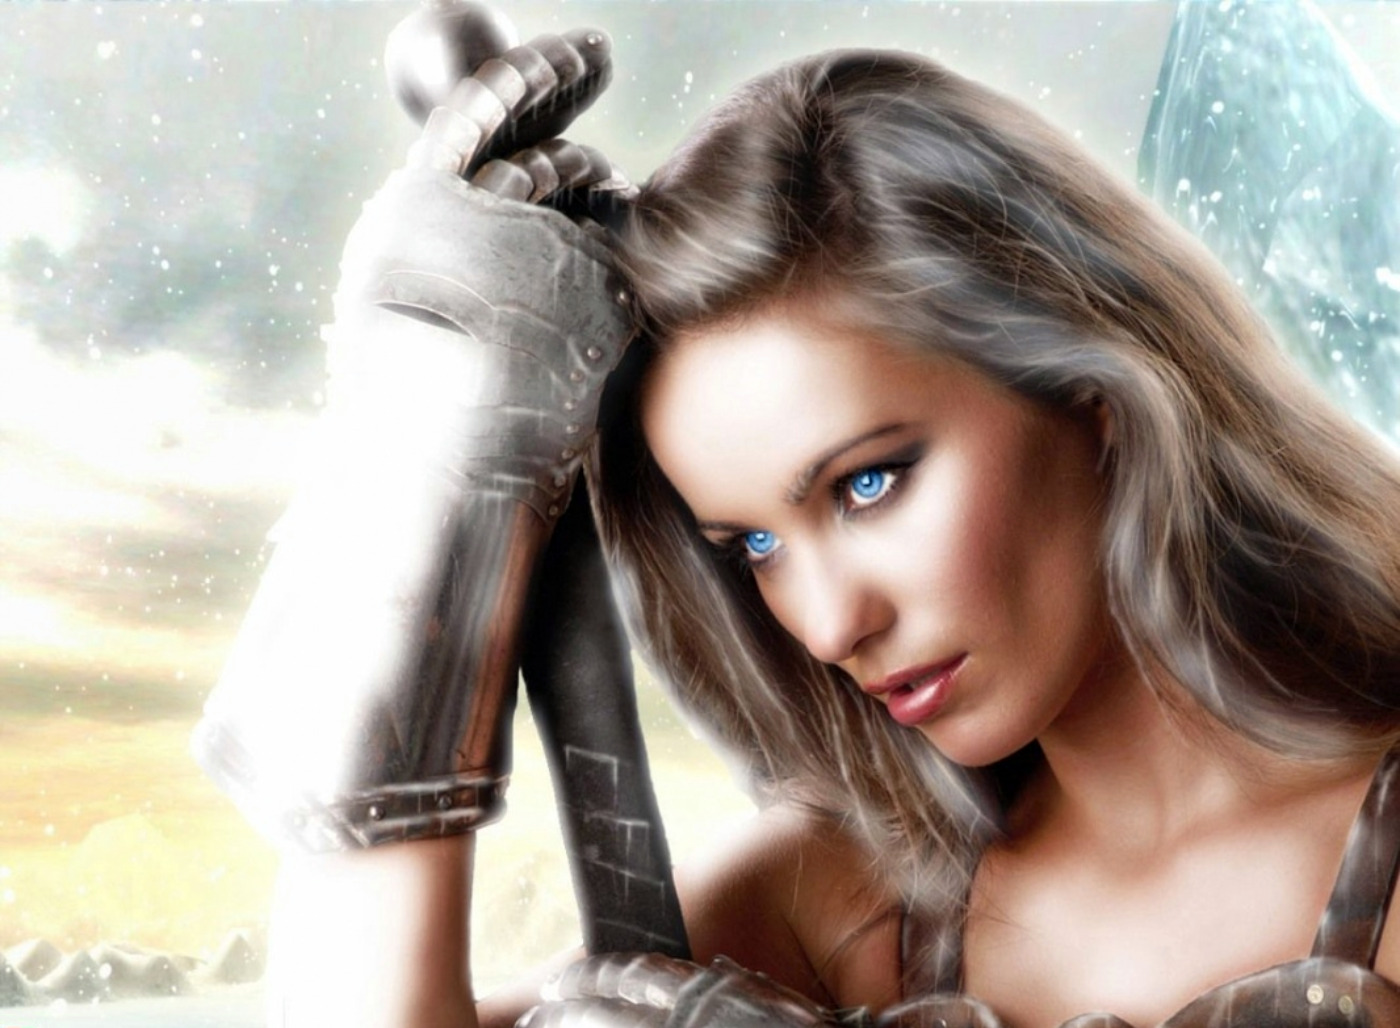 The Warrior: A fierce woman warrior wields a sword in a snowy landscape, wearing a gauntlet.